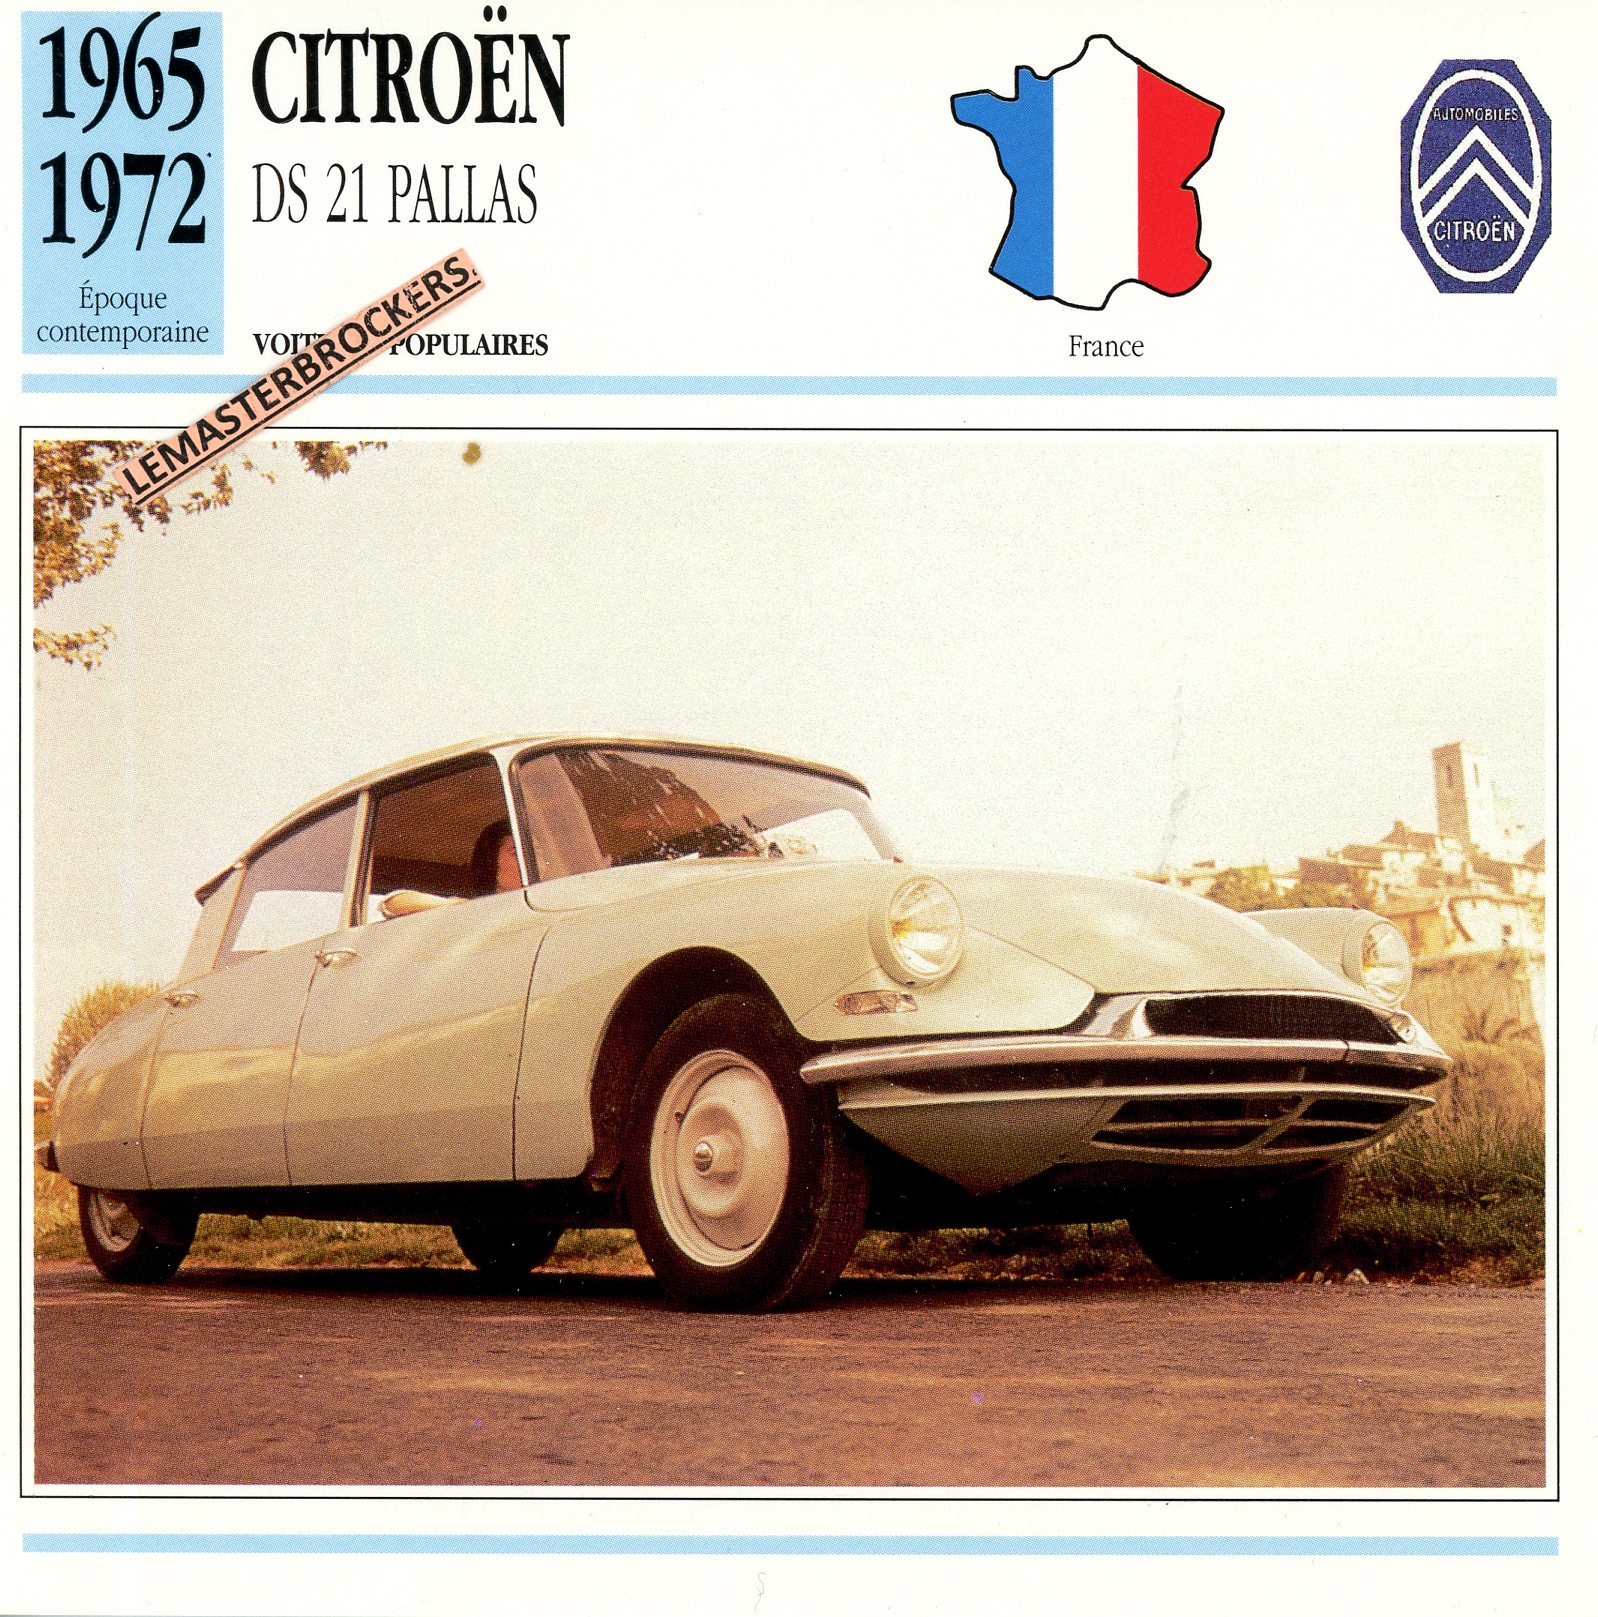 CITROËN-DS21-PALLAS-1965-1972-FICHE-AUTO-CARD-CARS-LEMASTERBROCKERS